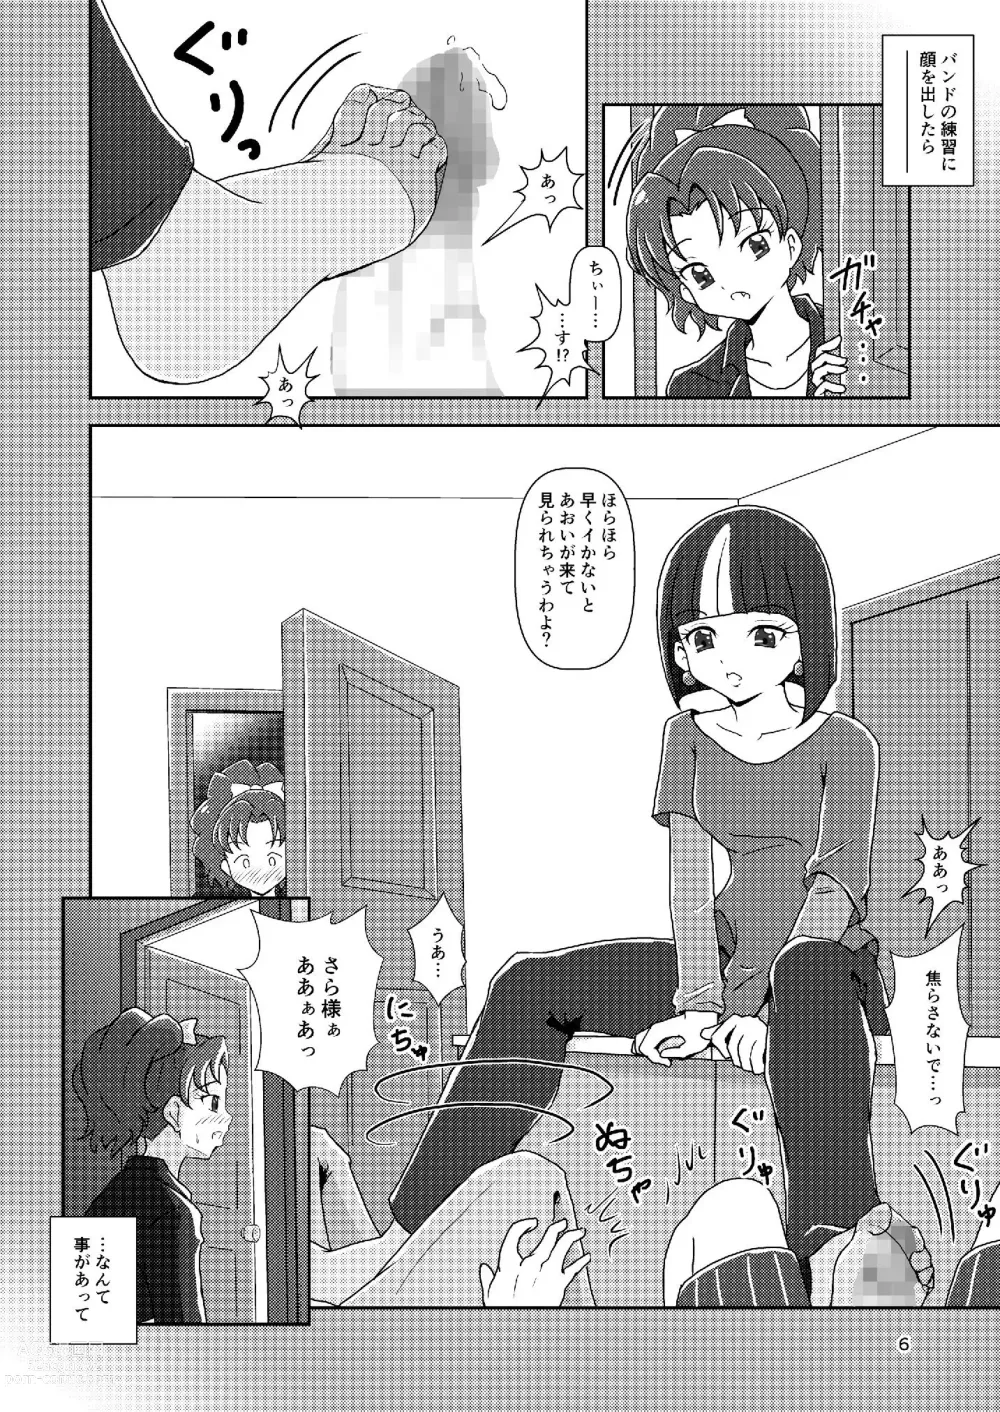 Page 6 of doujinshi Kirakira Zuricure Ashi Mode